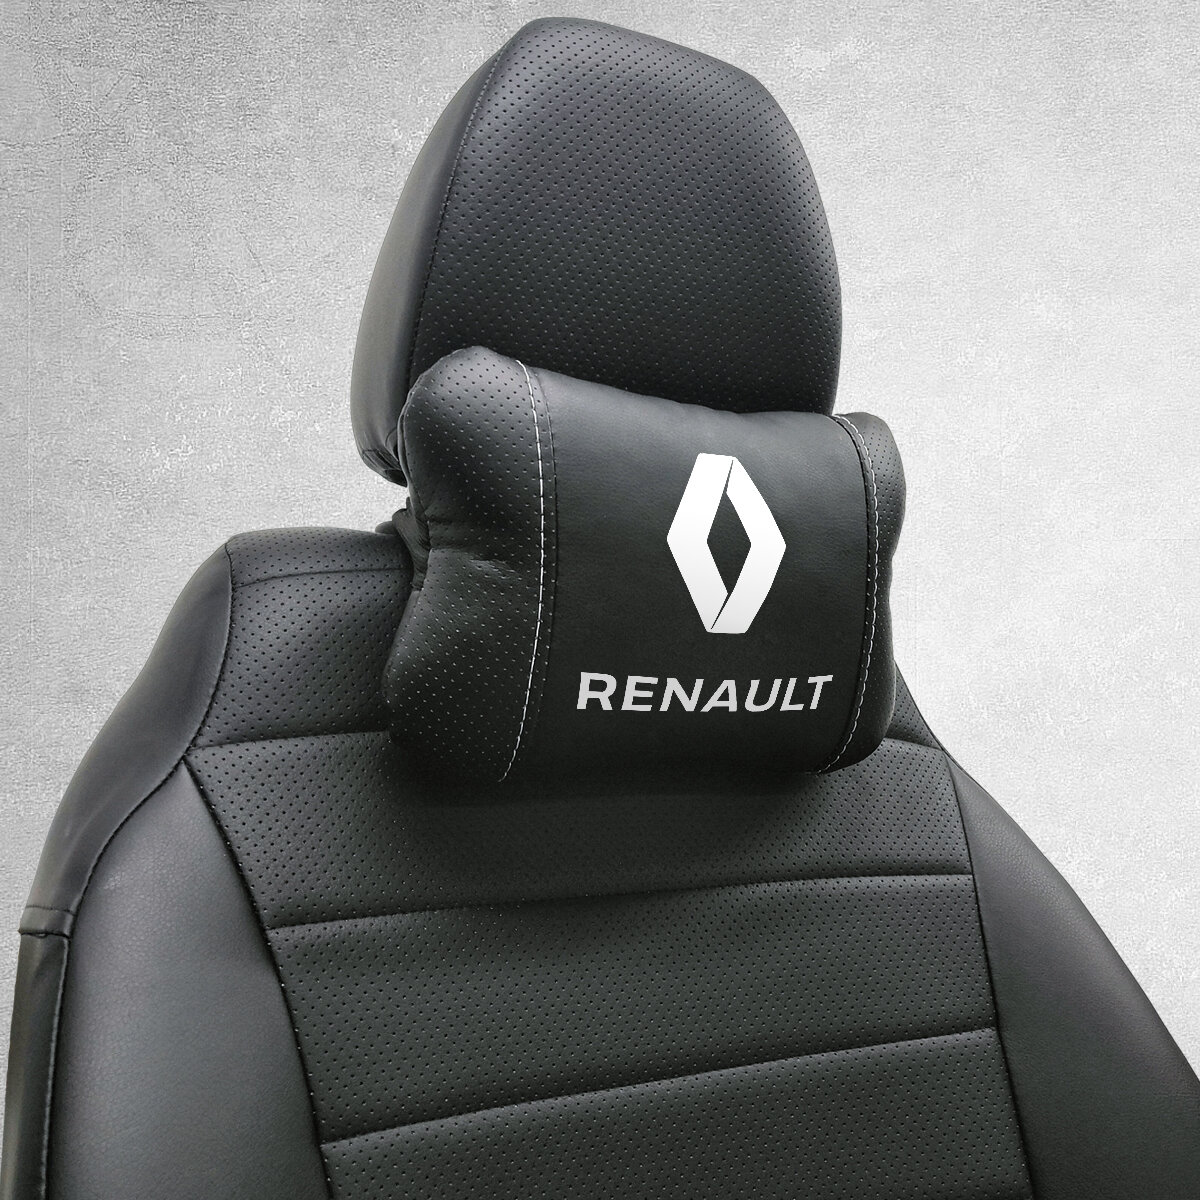 Автомобильная подушка под шею на подголовник эмблема Renault, для Рено. Подушка для шеи в машину. Подушка на сиденье автомобиля.